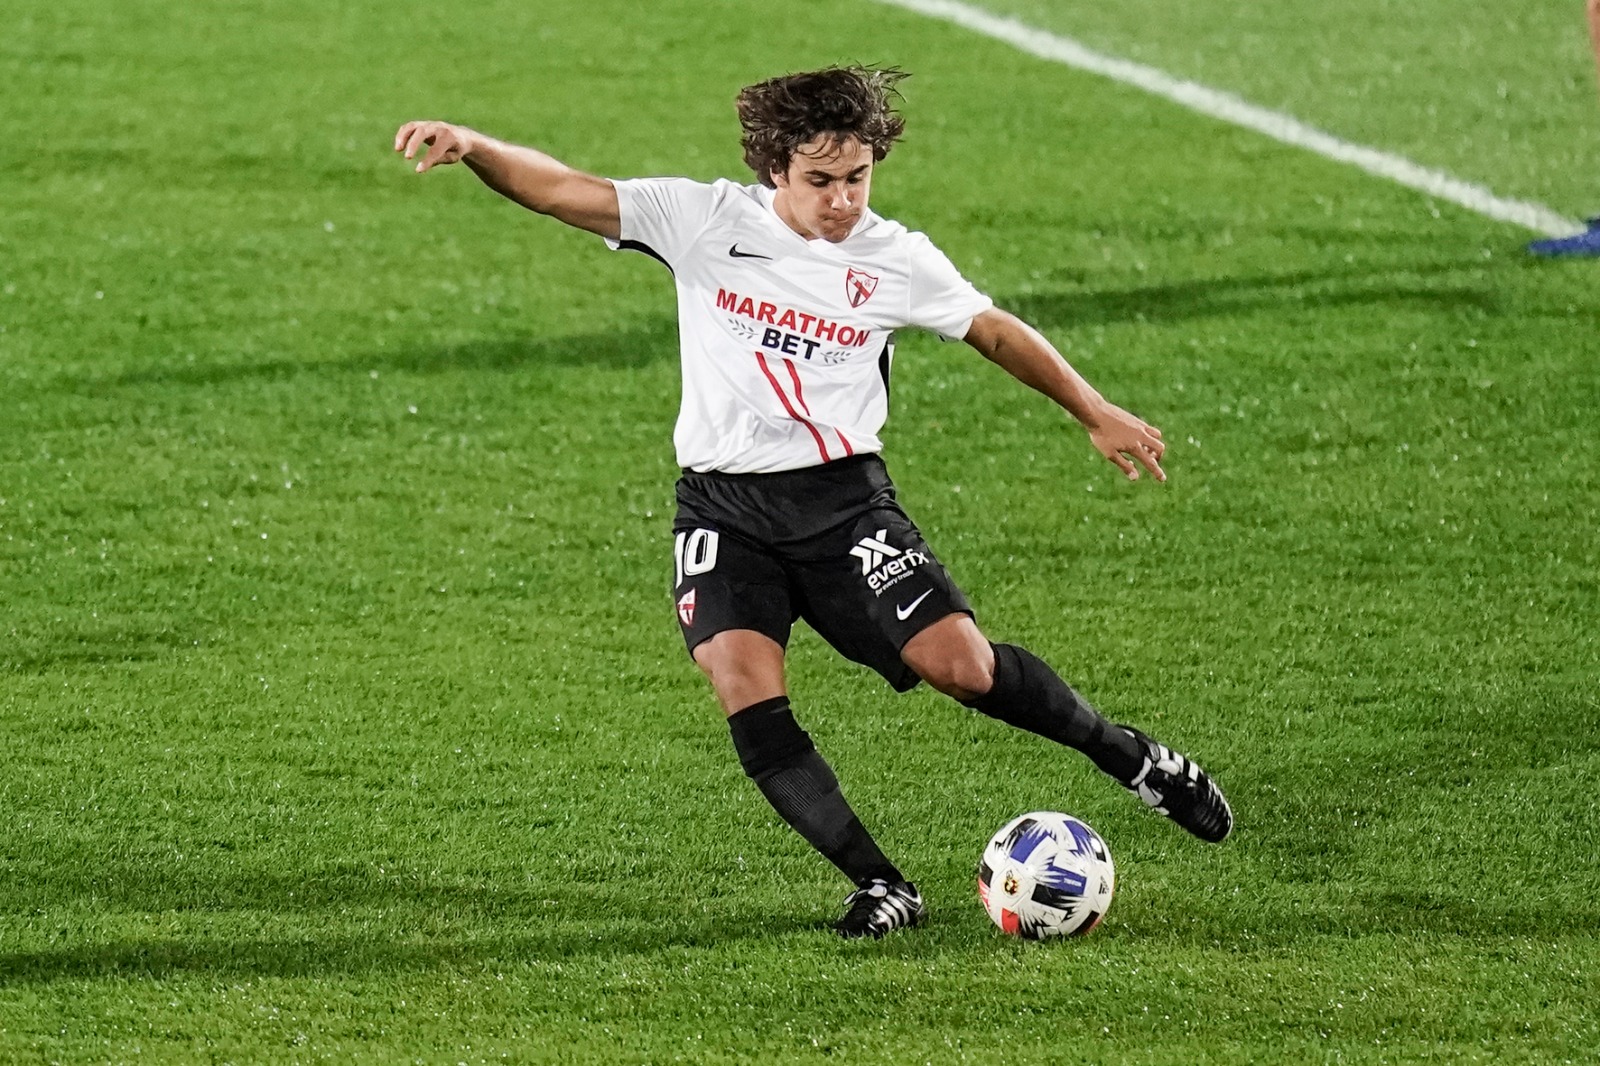 Carlos Álvarez, Sevilla FC